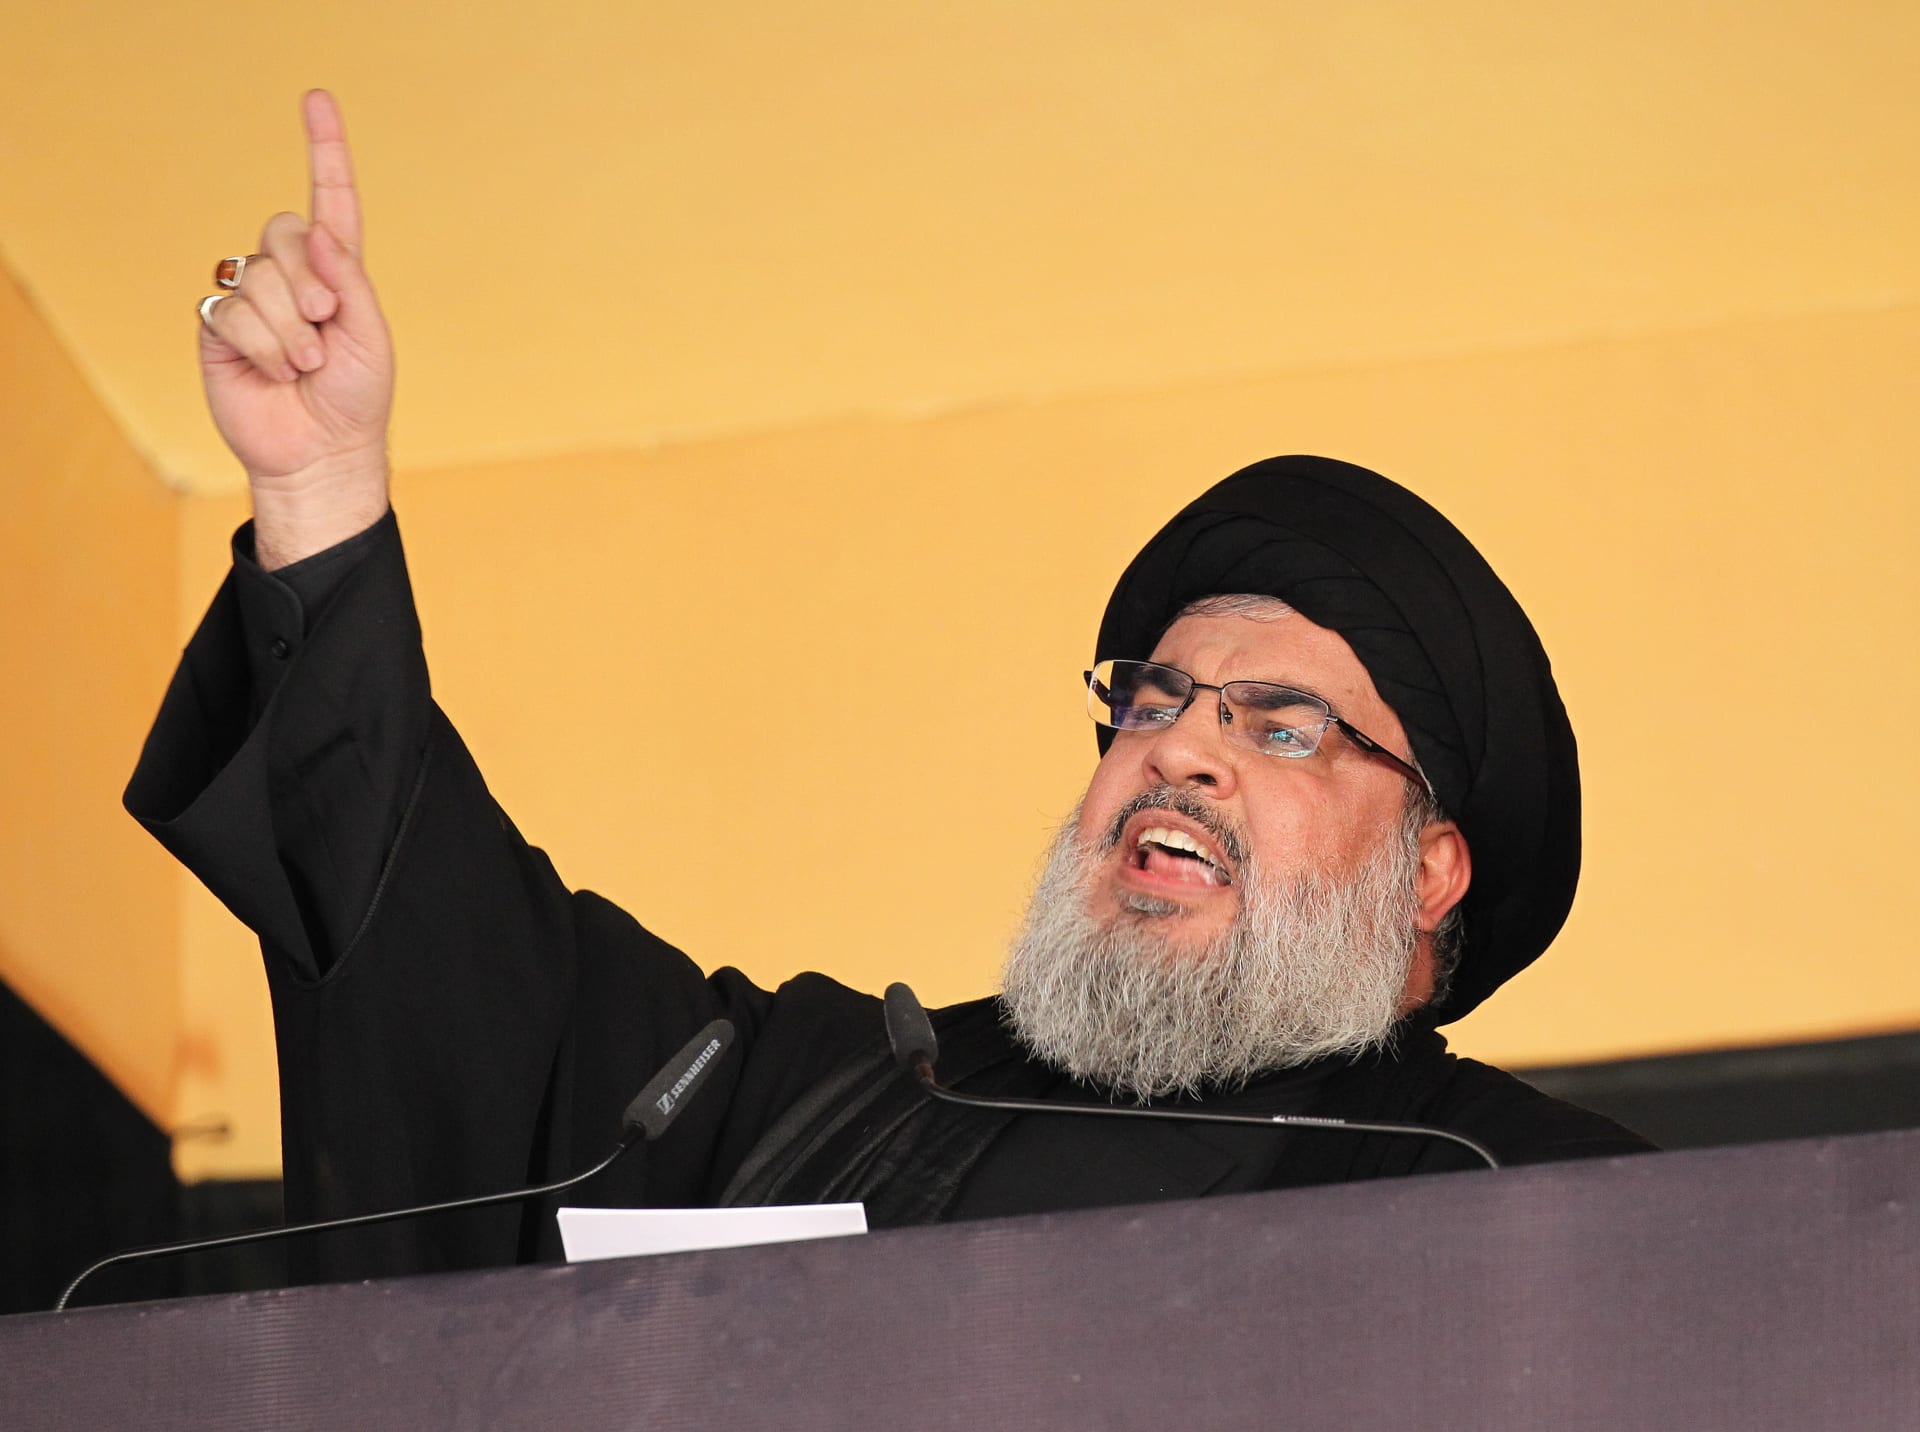 حزب الله: السعودية تراجعت عن "هبتها".. ولكننا لا نُباع أو نُشترى ولن نركع على أعتاب الملوك